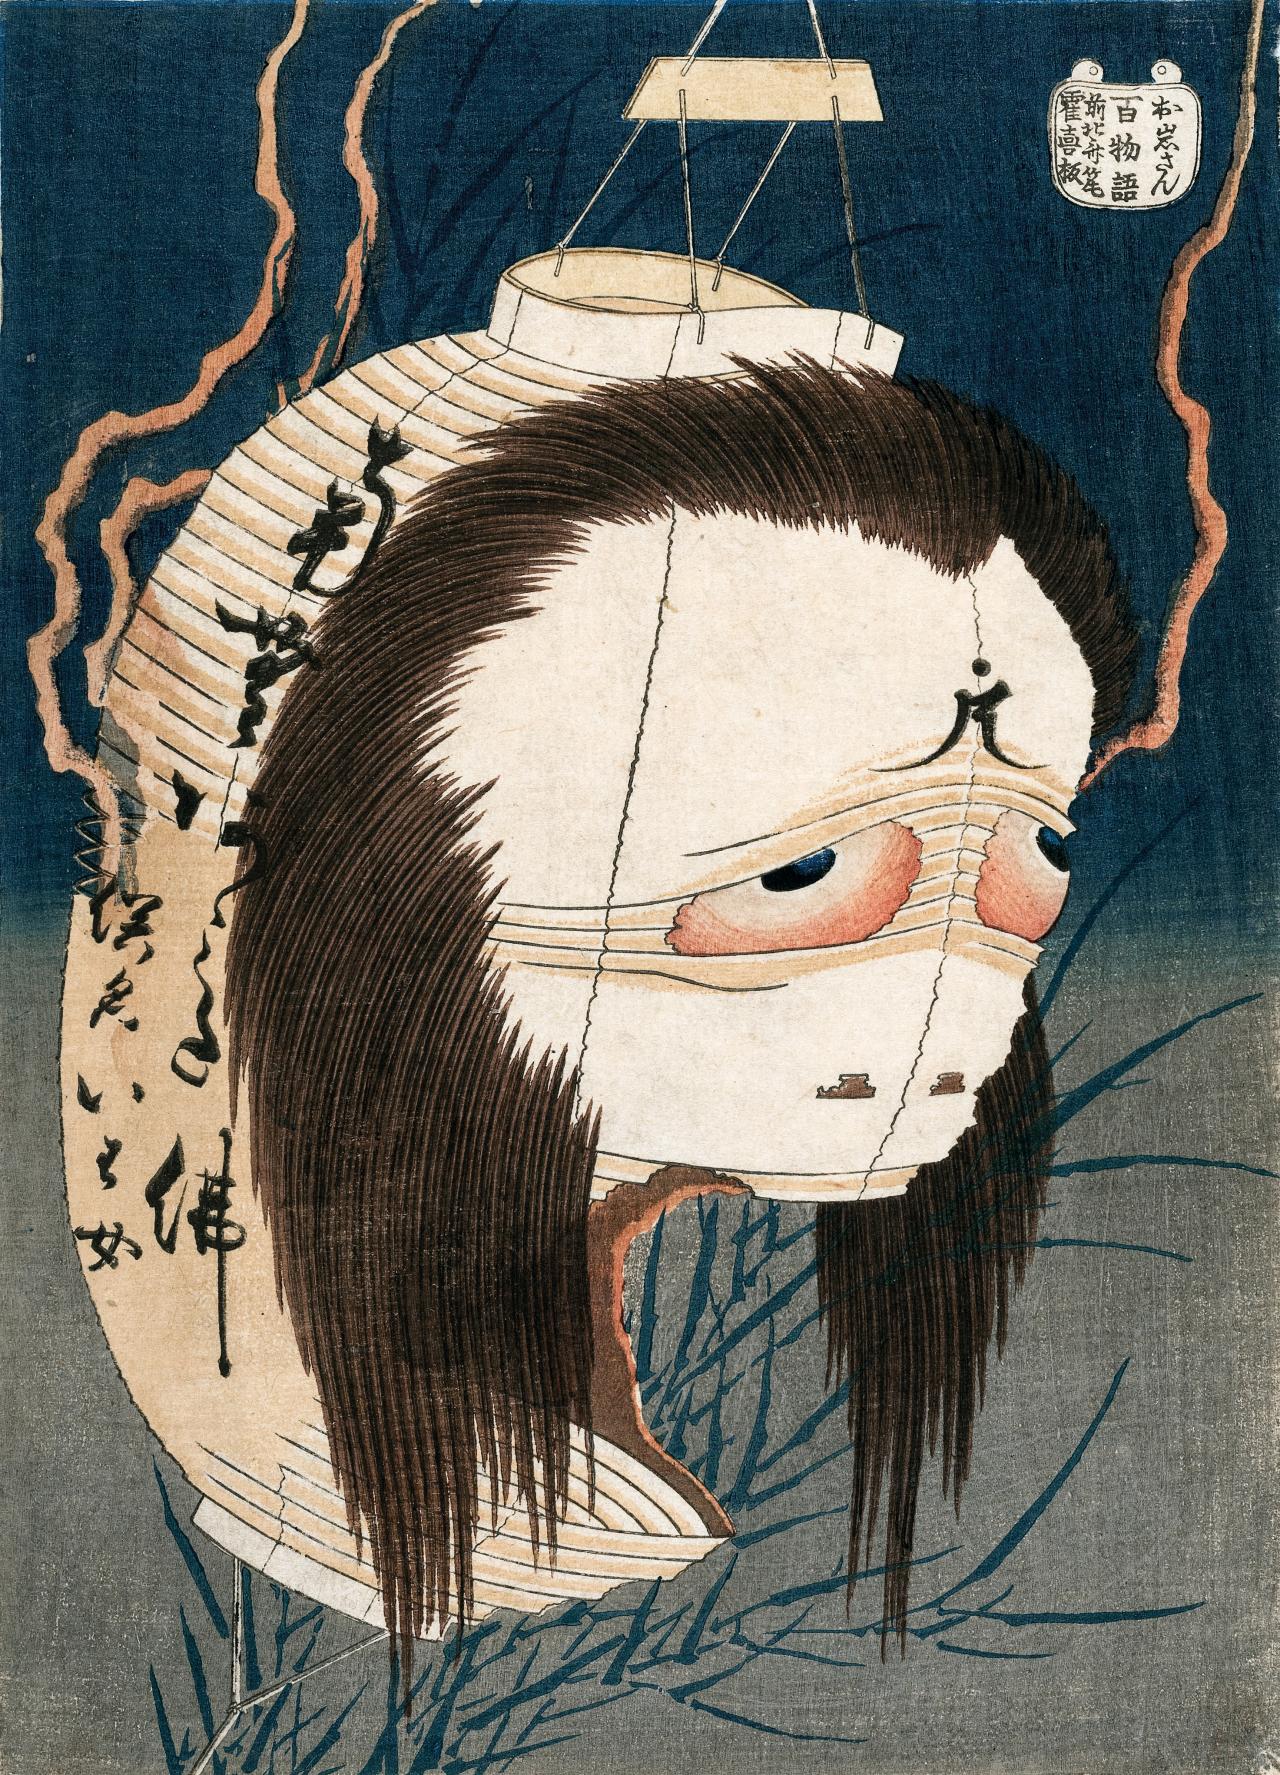 Los Fantasmas y Monstruos de Katsushika Hokusai